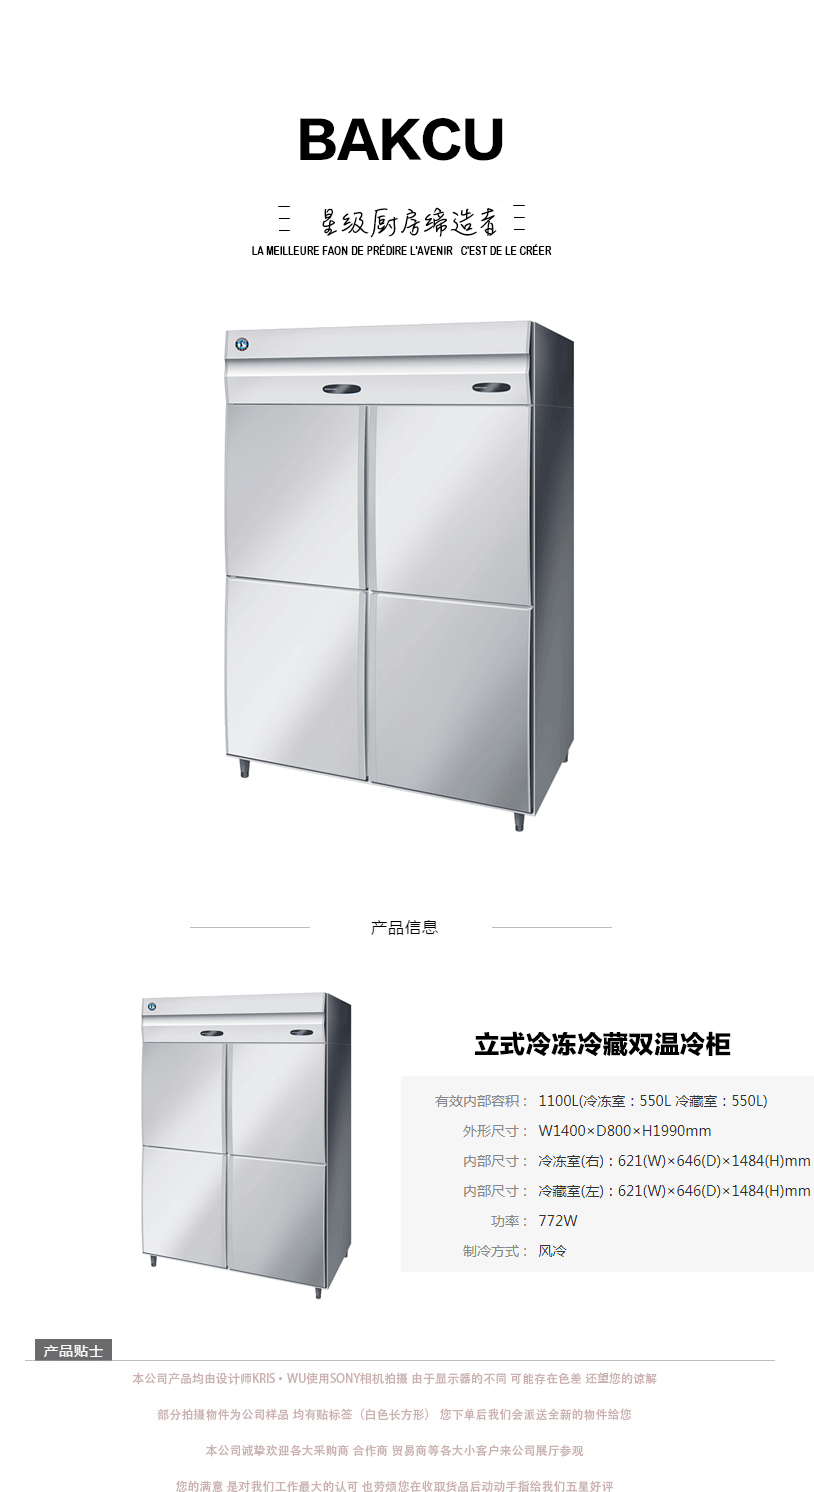 日本HOSHIZAKI星崎不锈钢原装进口立式冷冻冷藏双温冷柜 M系列示例图1